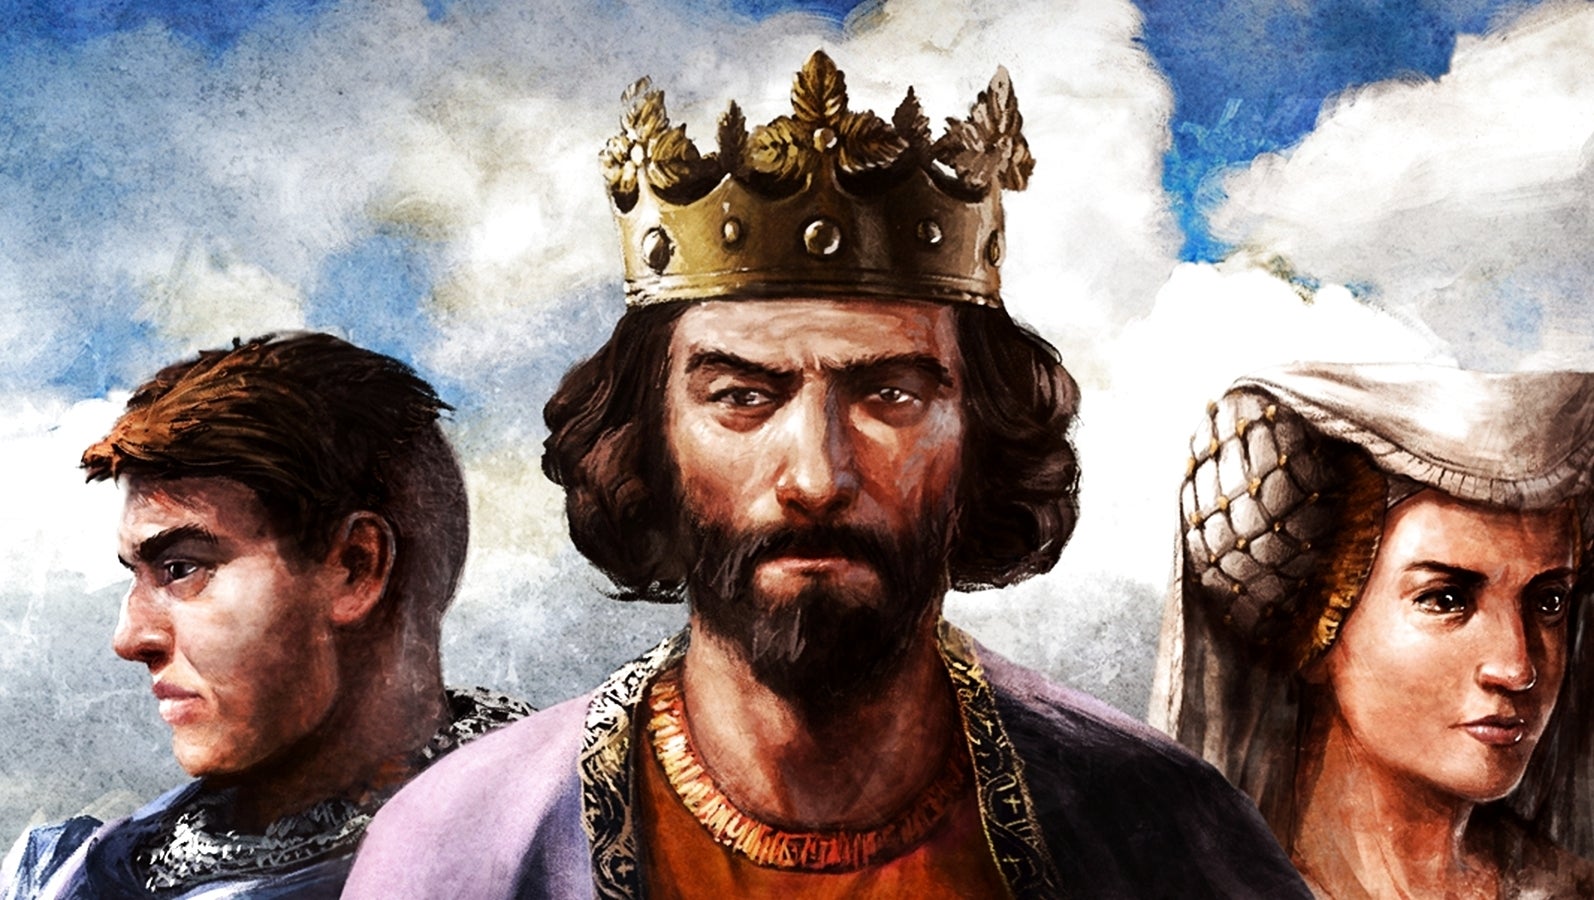 Bilder zu Age of Empires 2 wird noch größer! Erweiterung Lords of the West erscheint im Januar